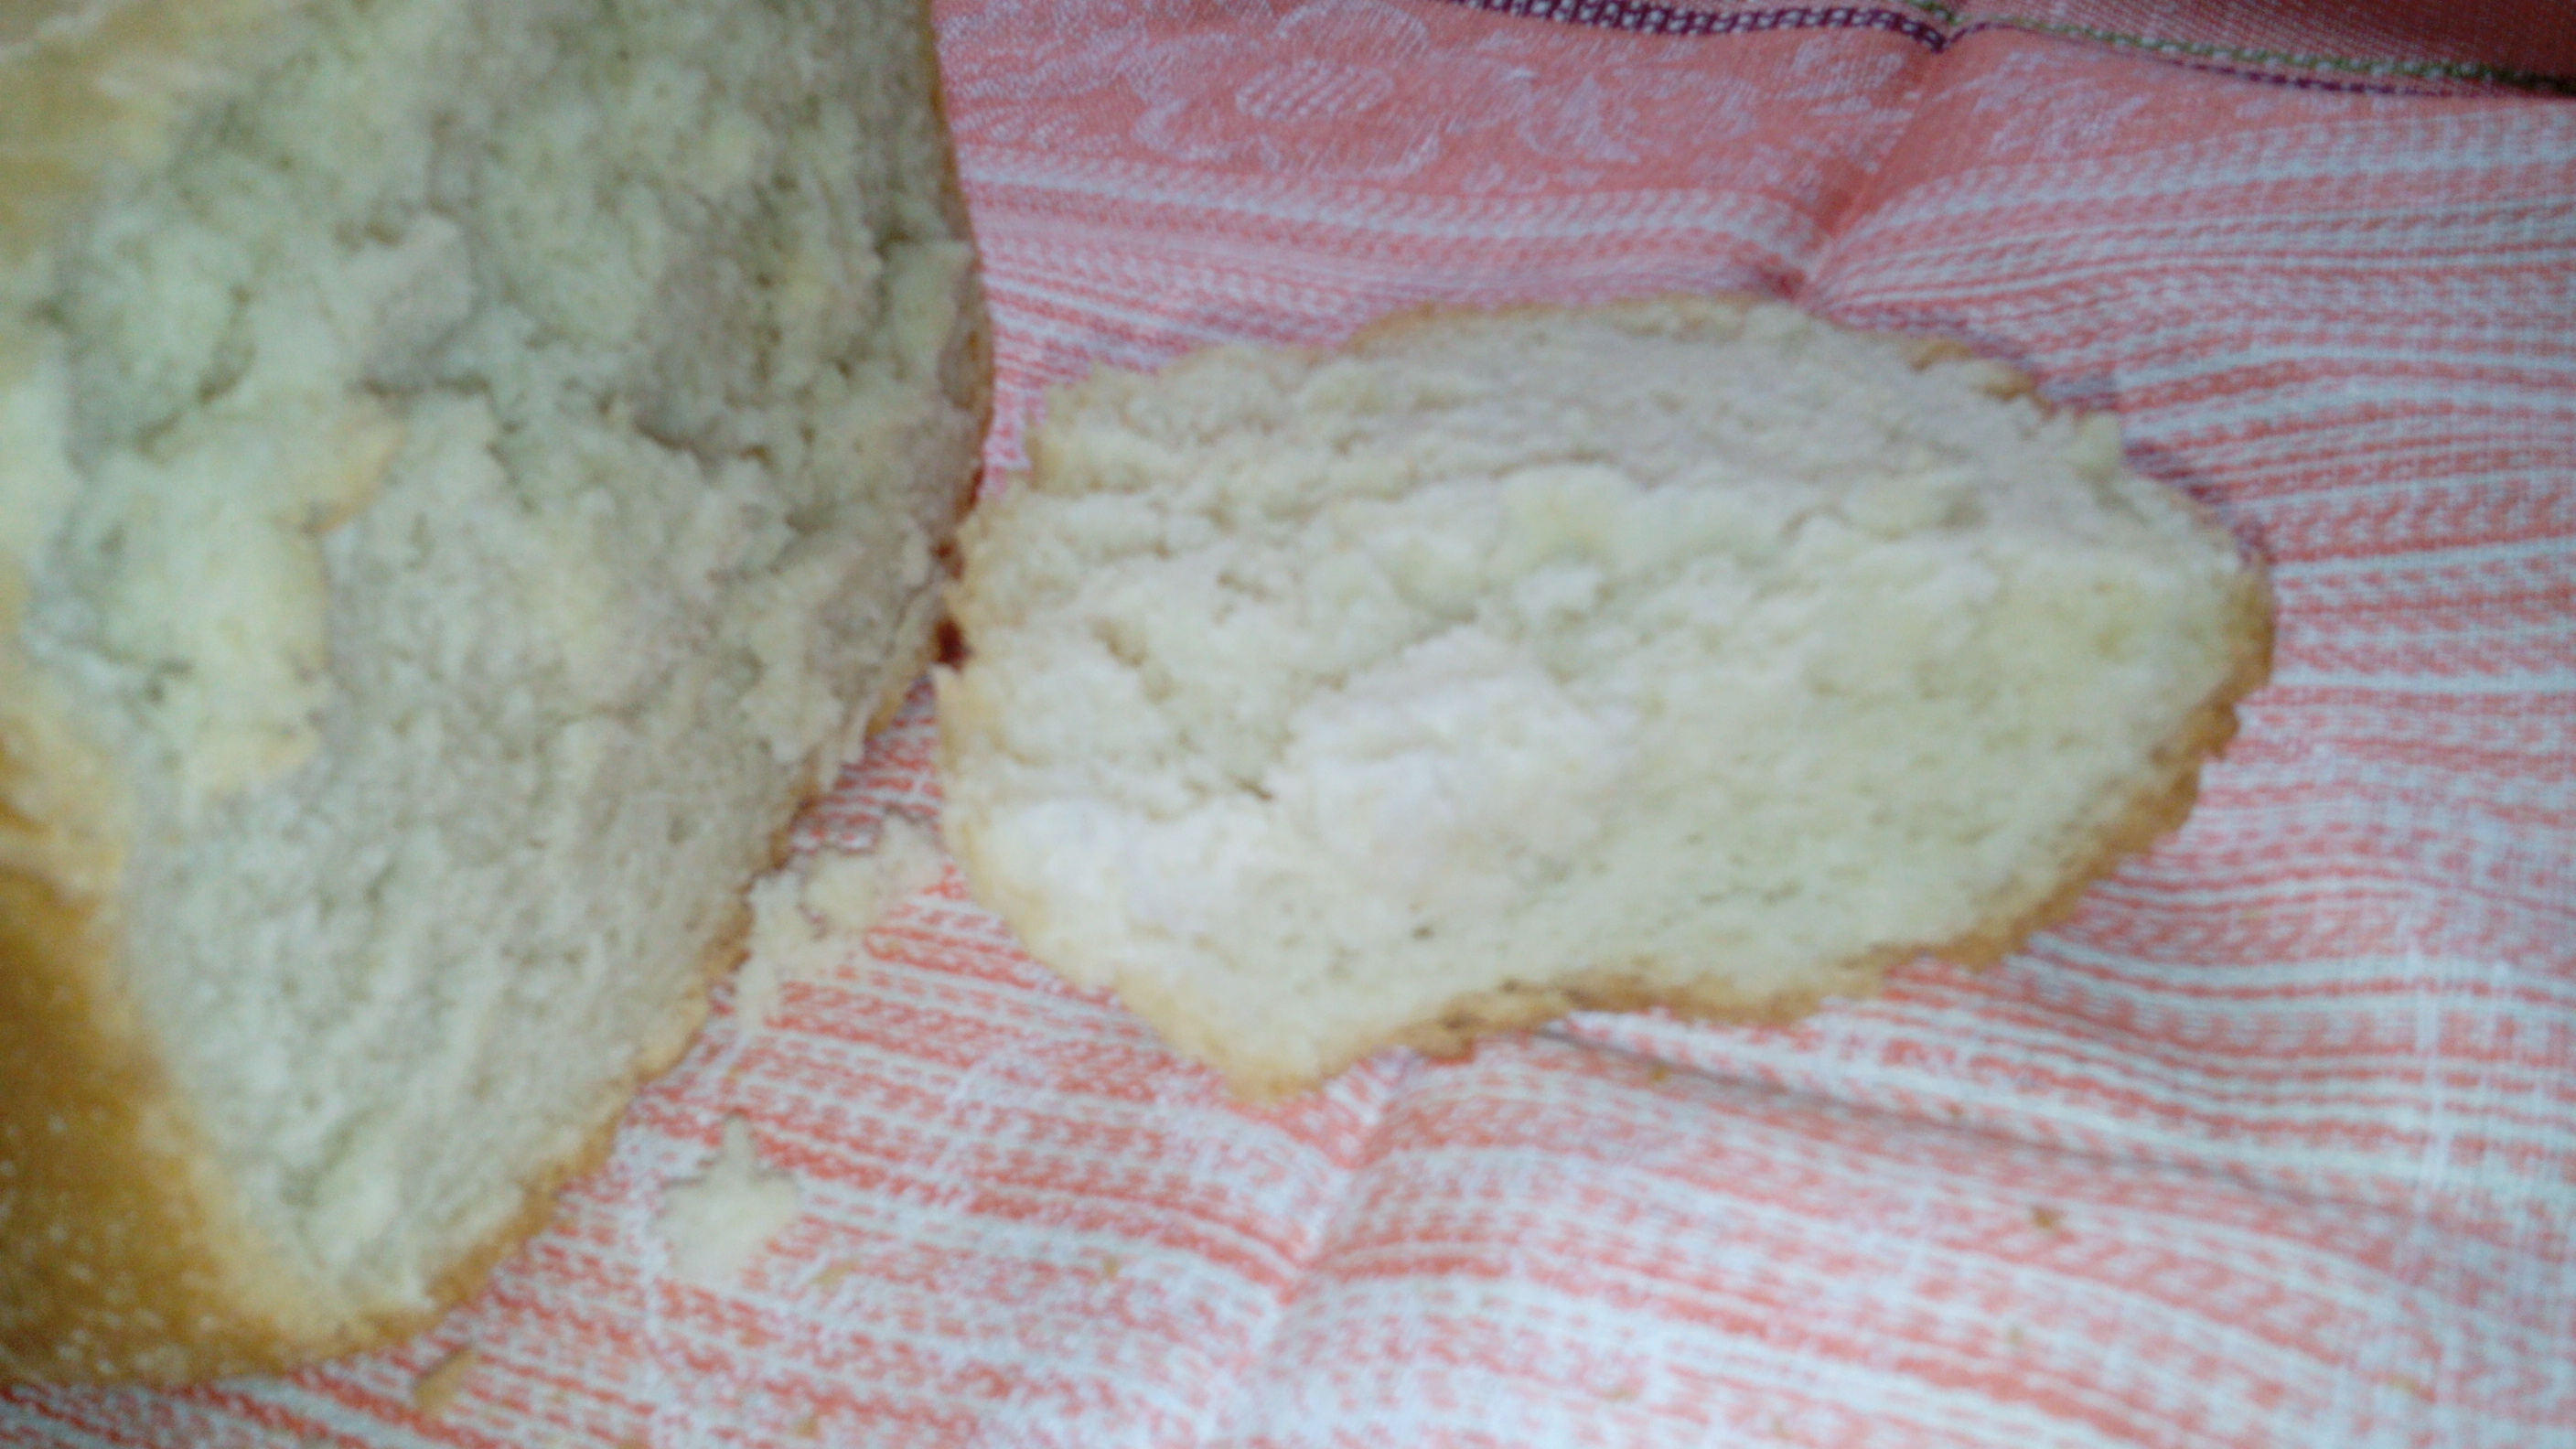 Wypiekacz do chleba Marka 3801. Program 1 - Chleb biały lub podstawowy